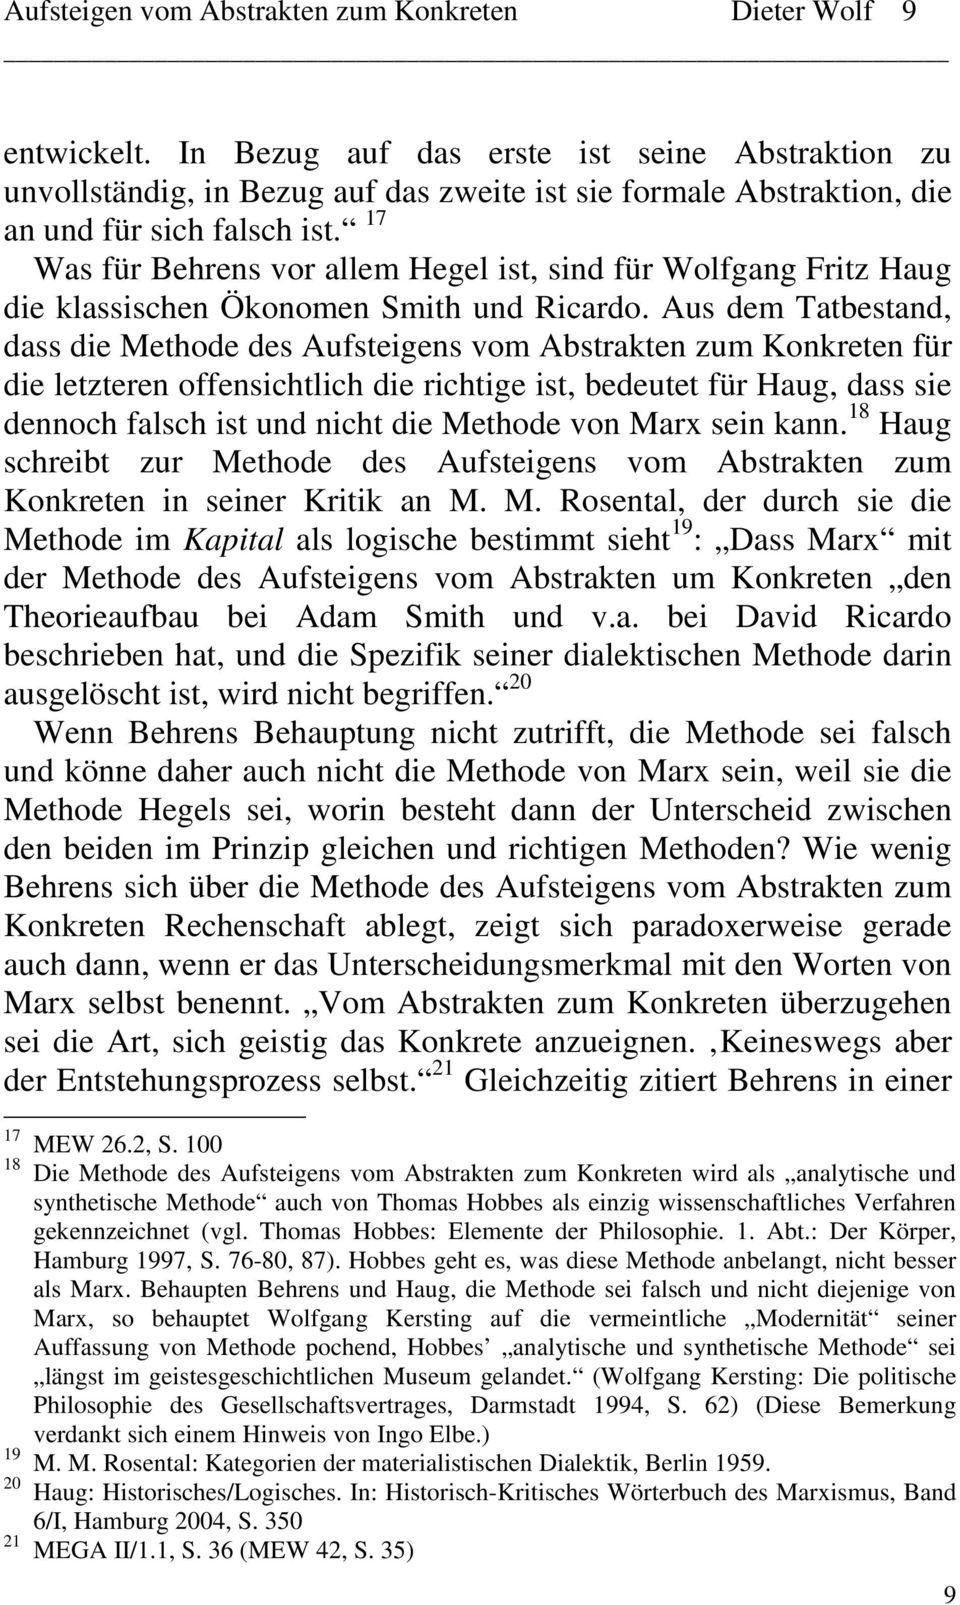 17 Was für Behrens vor allem Hegel ist, sind für Wolfgang Fritz Haug die klassischen Ökonomen Smith und Ricardo.